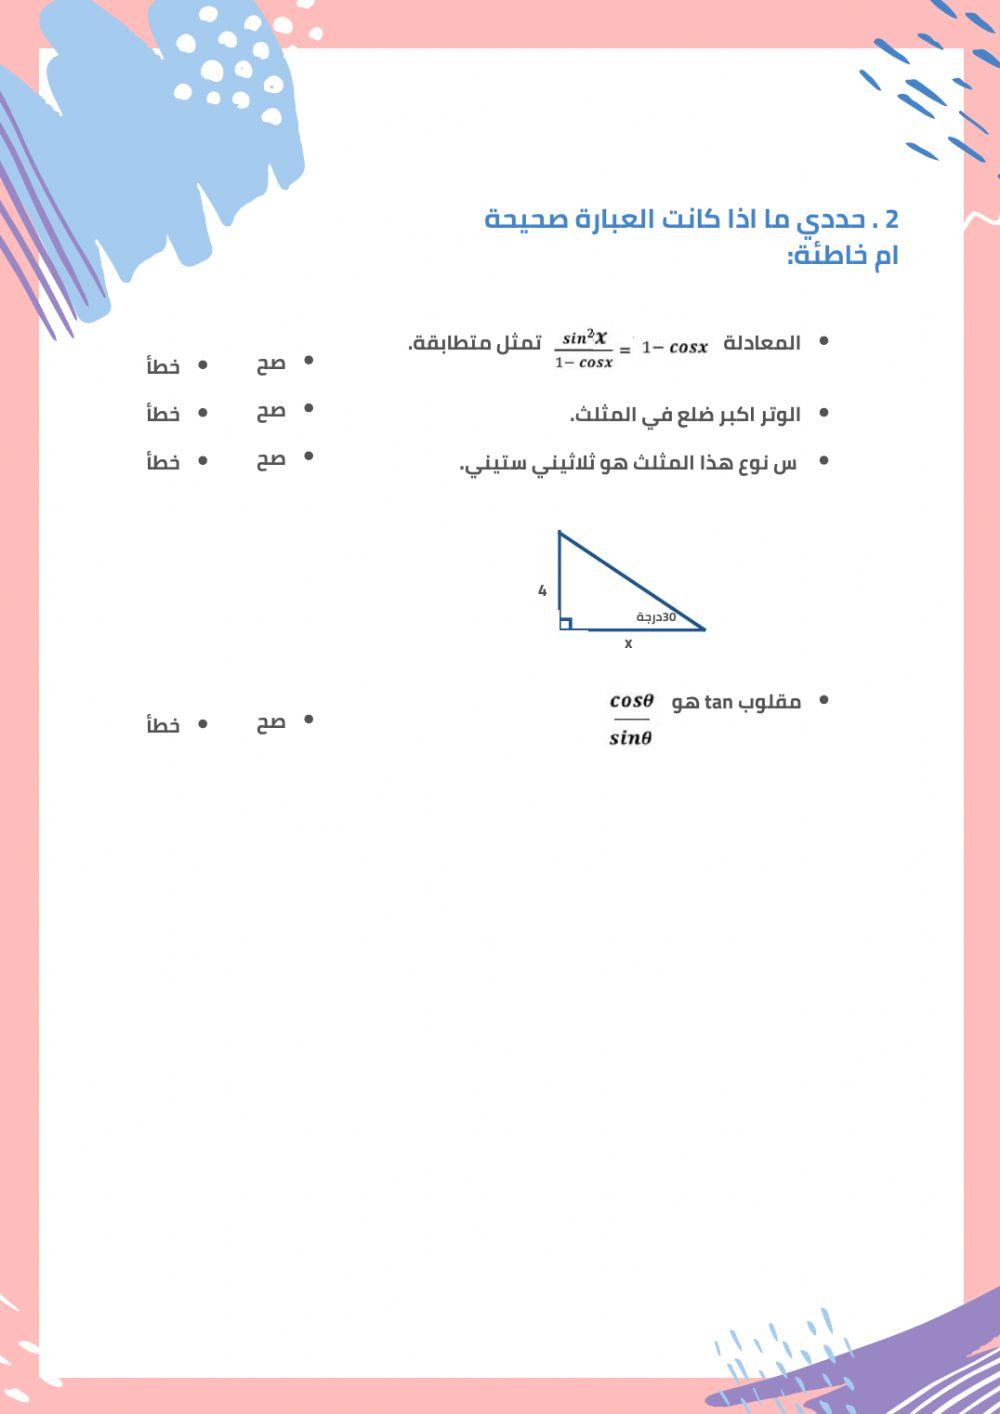 ورقة عمل لدرس اثبات صحة المتطابقات المثلثية